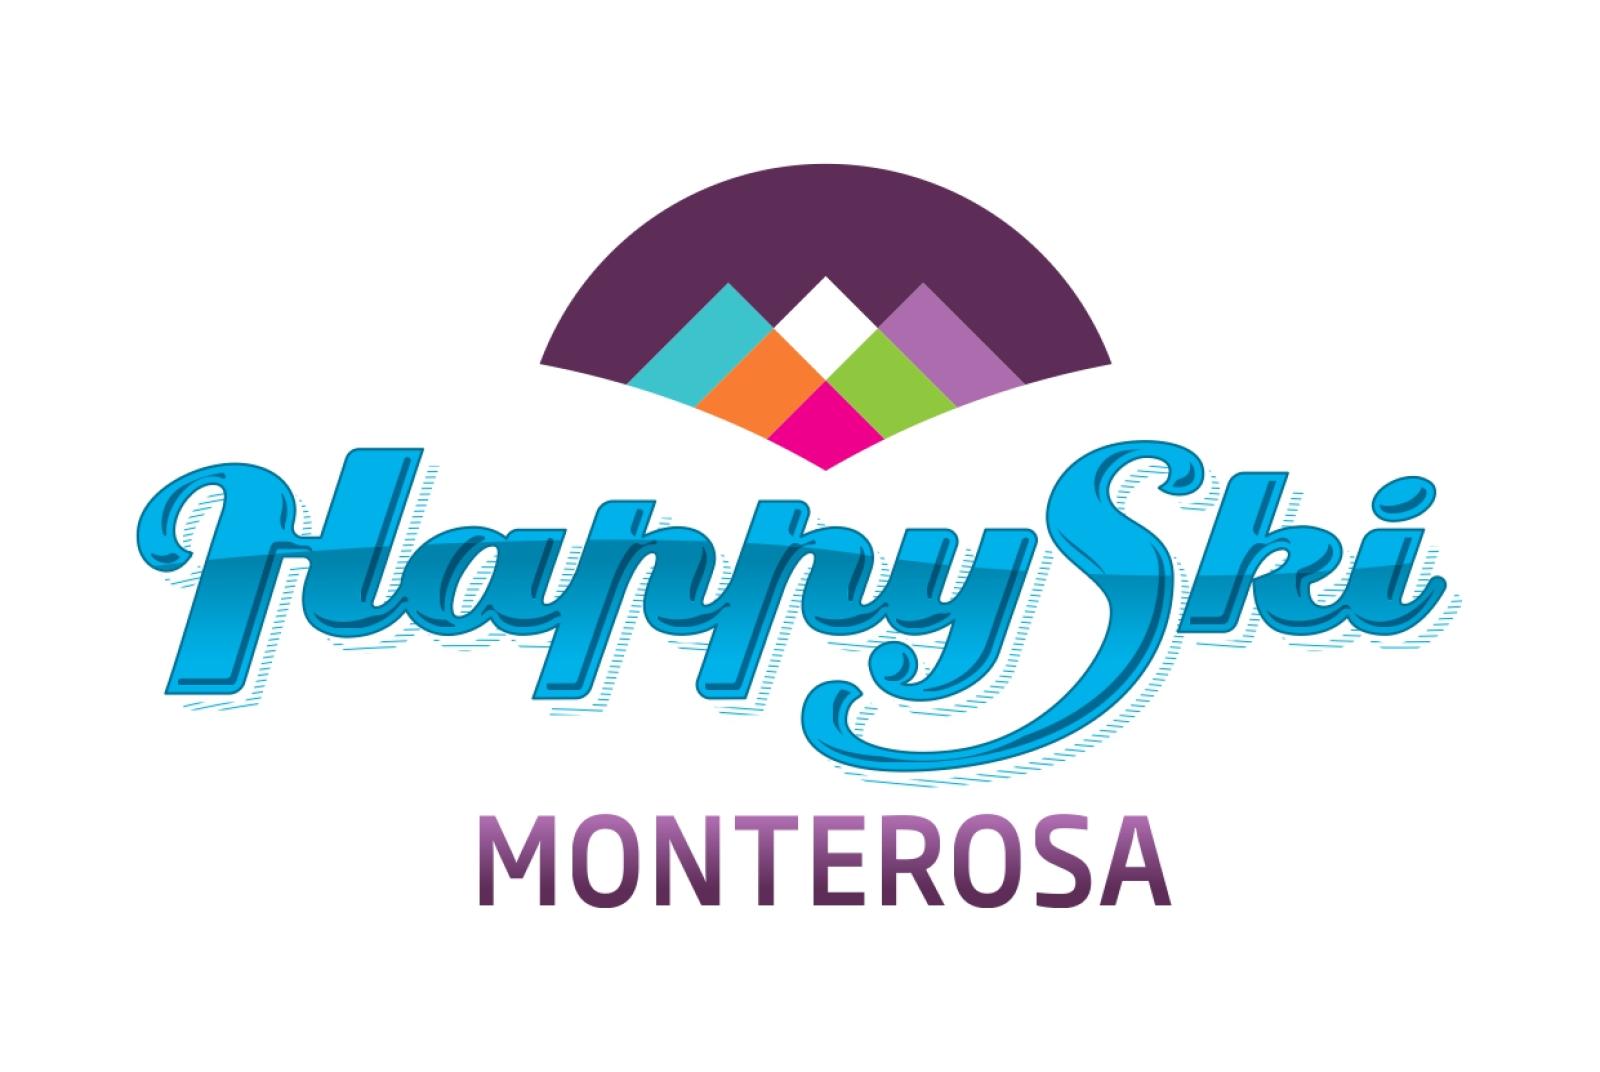 Happy Ski Monterosa